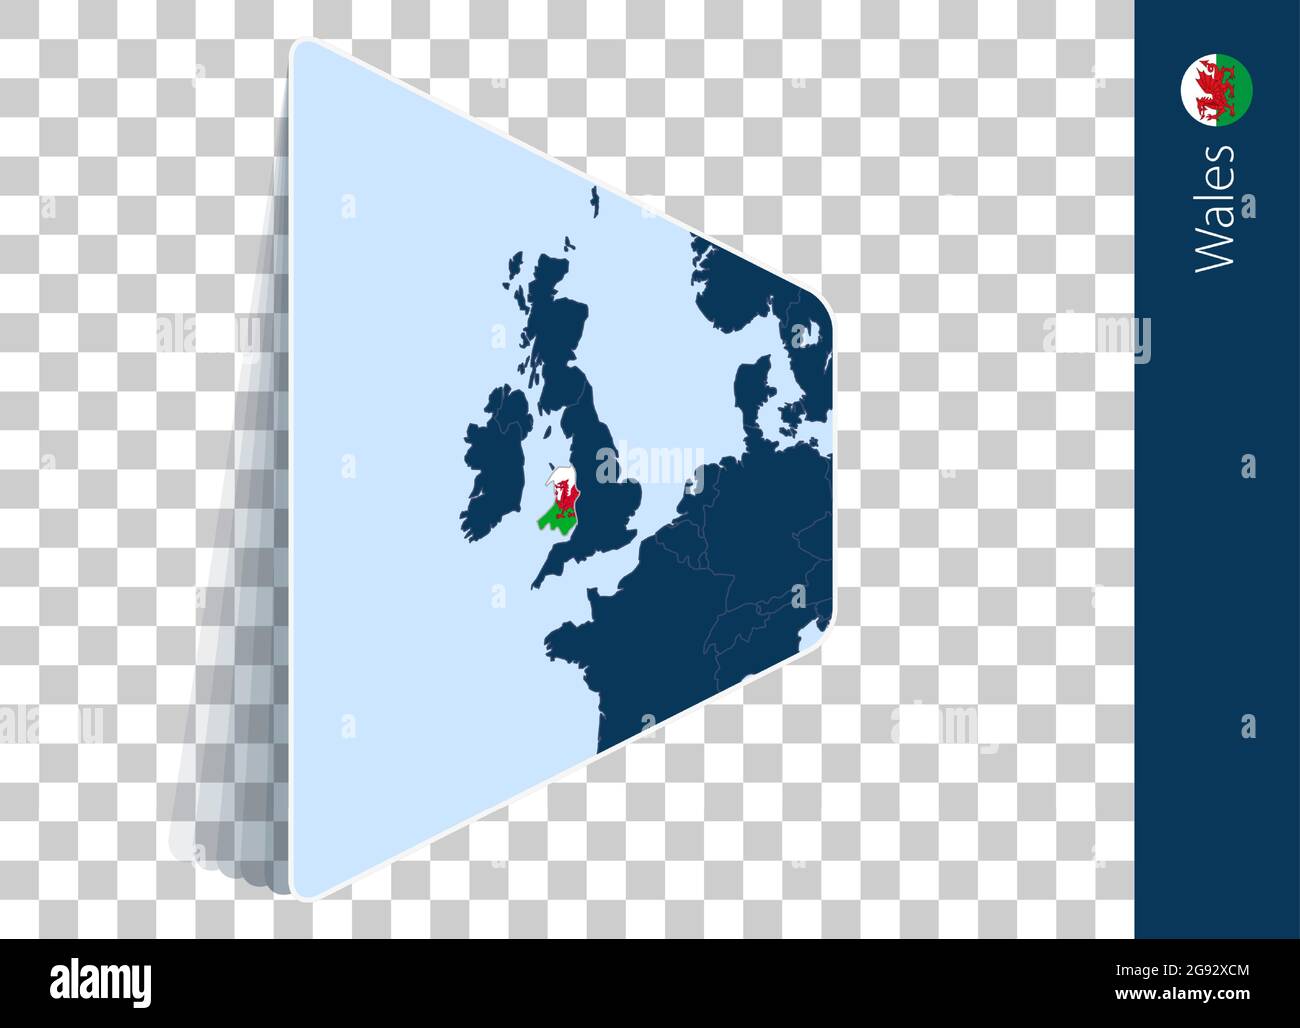 Karte und Flagge von Wales auf transparentem Hintergrund. Hervorgehobenes Wales auf blauer Vektorkarte. Stock Vektor